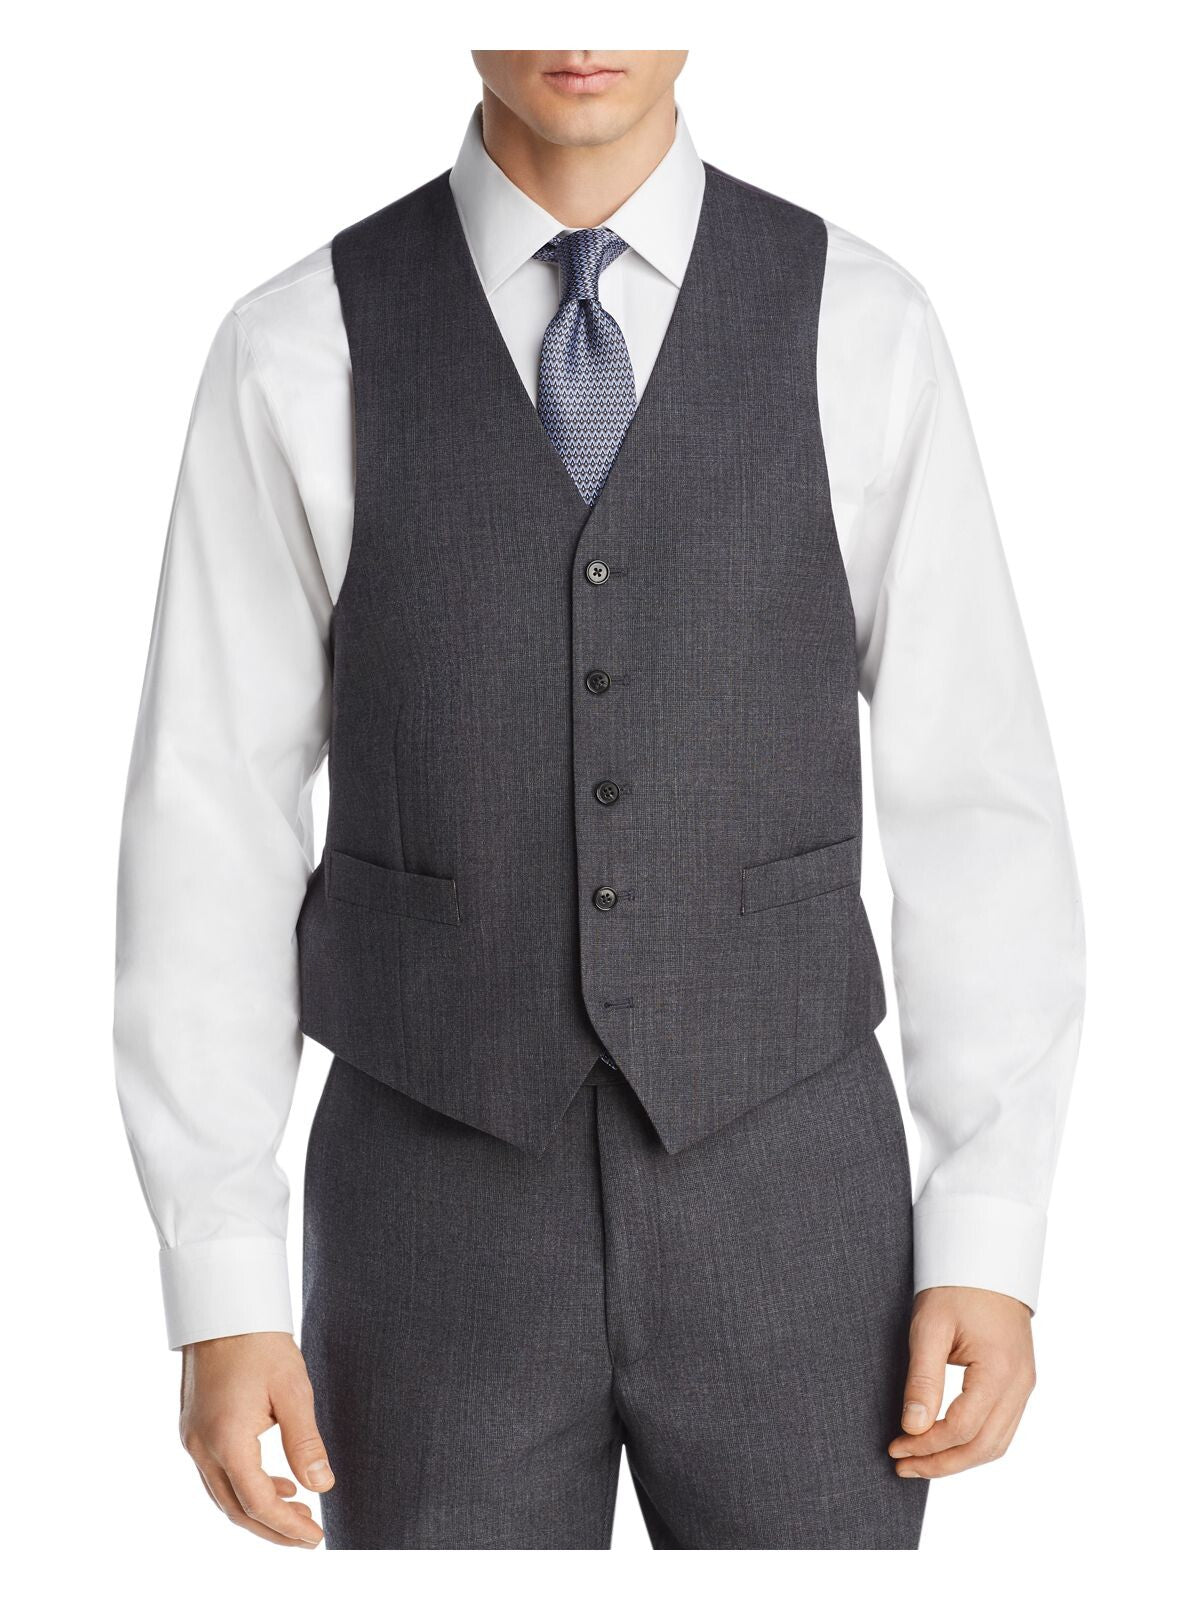 MICHAEL KORS Mens Gray Classic Fit Suit Separate Blazer Jacket 36R